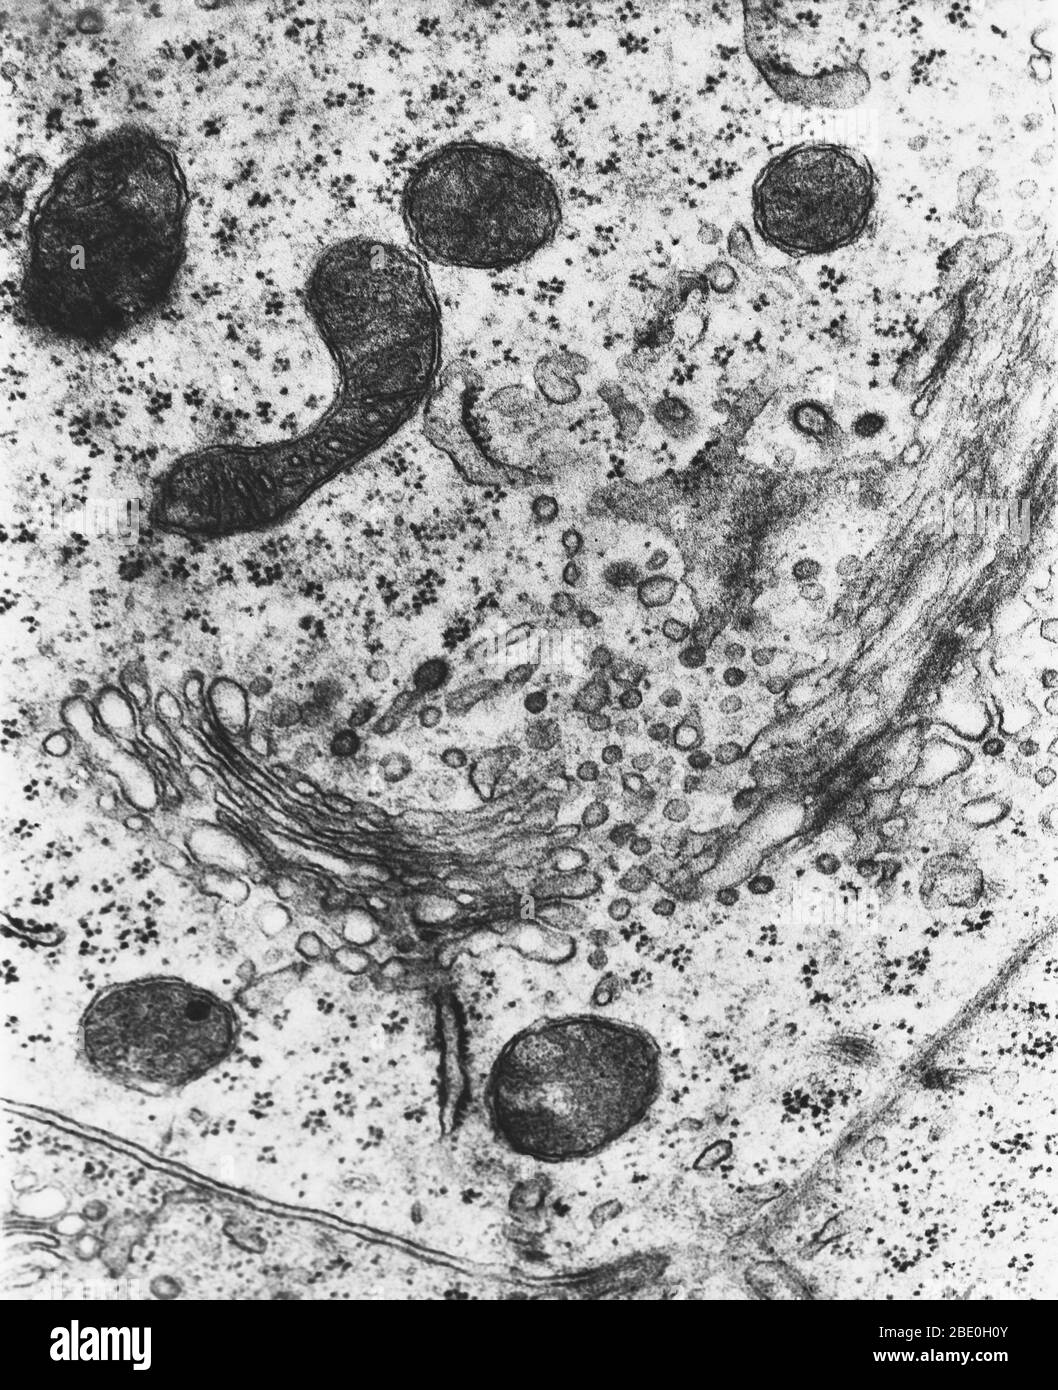 Micrographe électronique de transmission (TEM) des lysosomes. Un lysosome est une organelle liée à la membrane que l'on trouve dans presque toutes les cellules animales. Ce sont des vésicules sphériques qui contiennent des enzymes hydrolytiques qui peuvent décomposer pratiquement tous les types de biomolécules (déchets et débris cellulaires). Le nom lysosome dérive des mots grecs lyse, à séparer, et soma, corps. Ils sont souvent surappelés « sacs-fongicides » ou « sacs-fongicides » par des biologistes cellulaires en raison de leur rôle dans l'autolyse, plus communément appelée auto-digestion, se réfère à la destruction d'une cellule par l'action de ses propres enzymes. Magni Banque D'Images